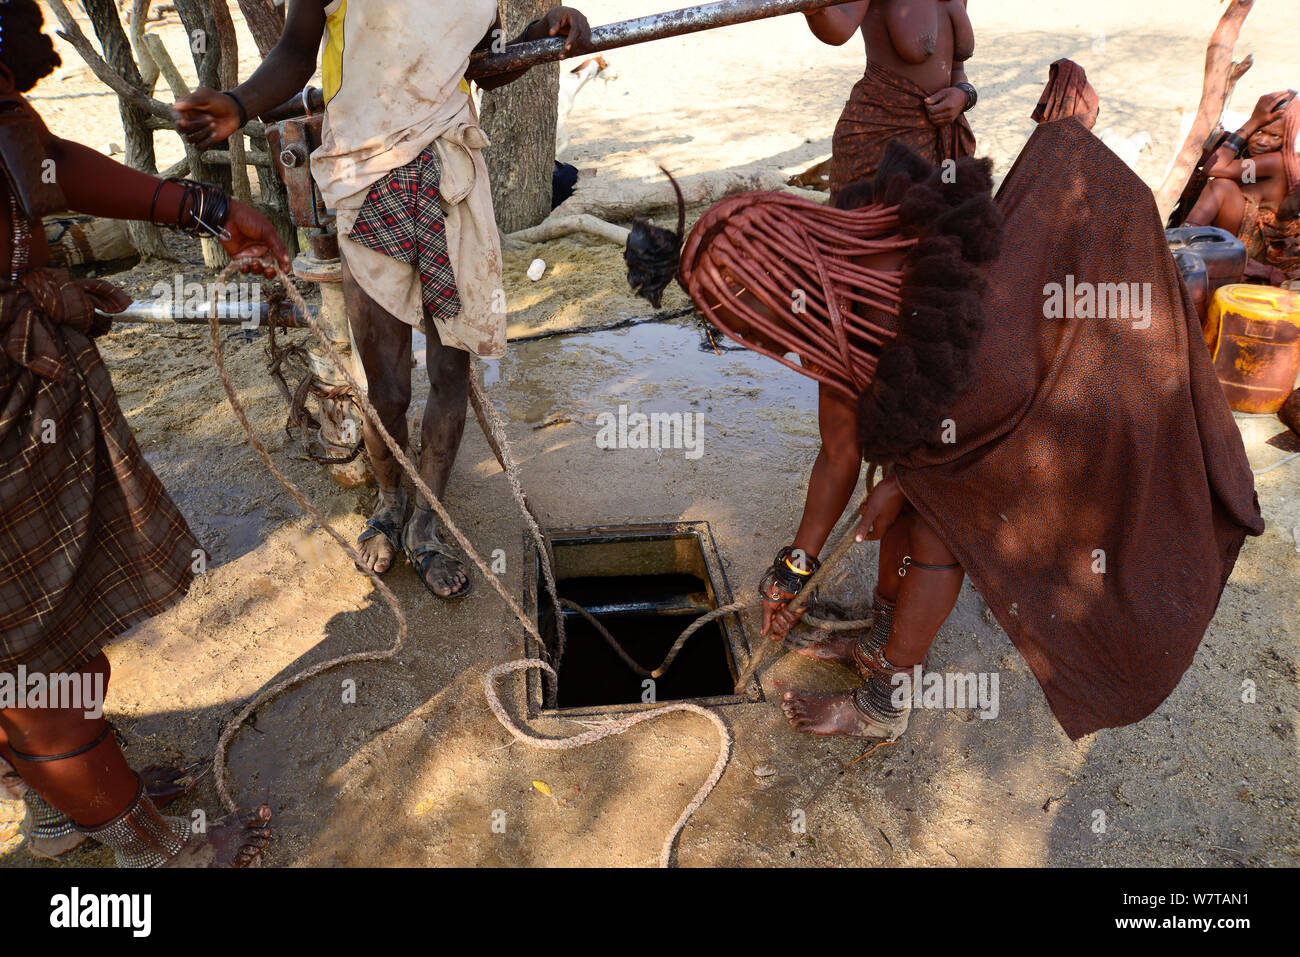 Femme Himba avec une corde en tirant l'eau d'un puits. Kaokoland, Namibie, septembre 2013. Banque D'Images